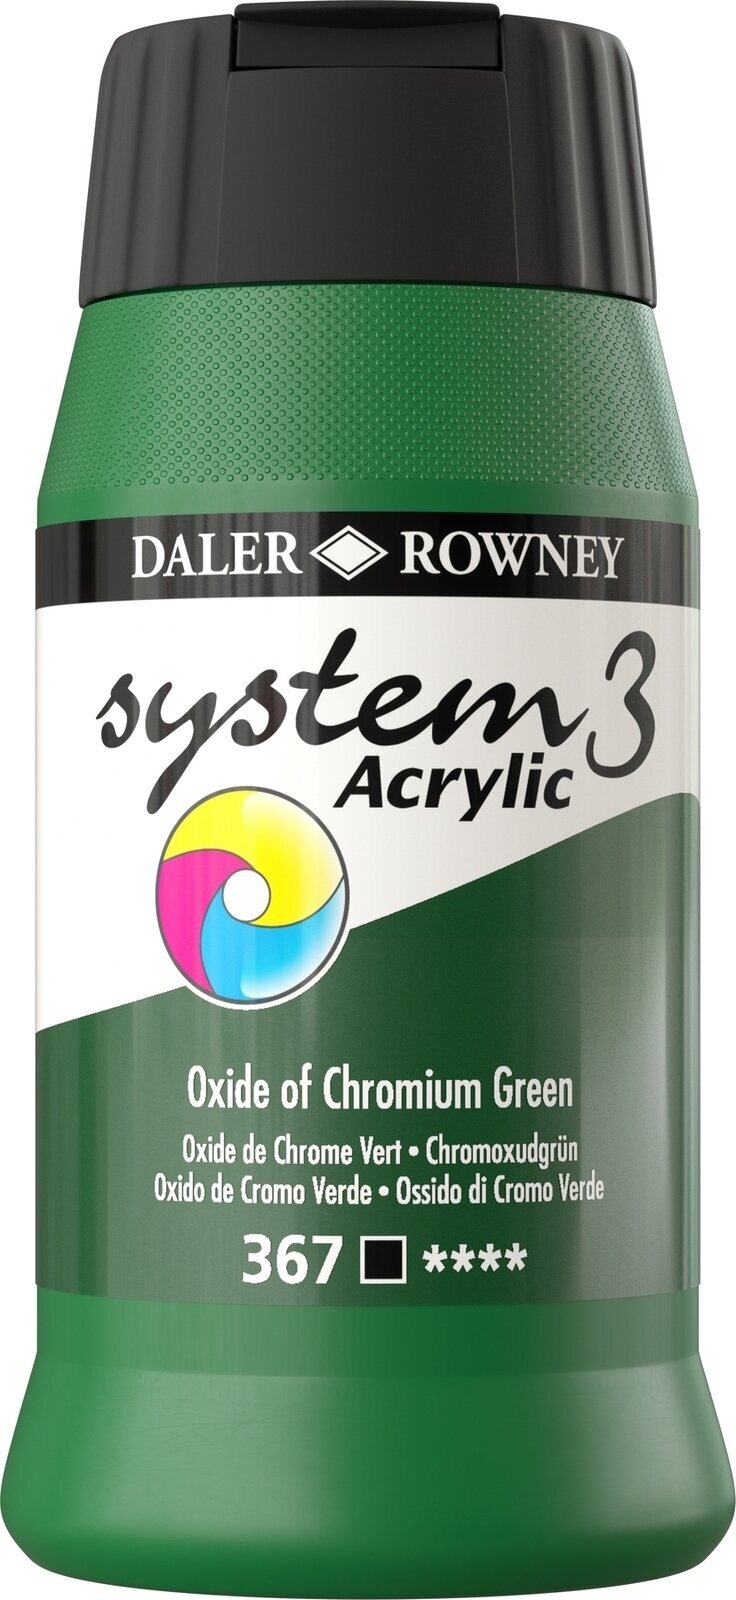 Tinta acrílica Daler Rowney System3 Tinta acrílica Oxide of Chromium Green 500 ml 1 un.